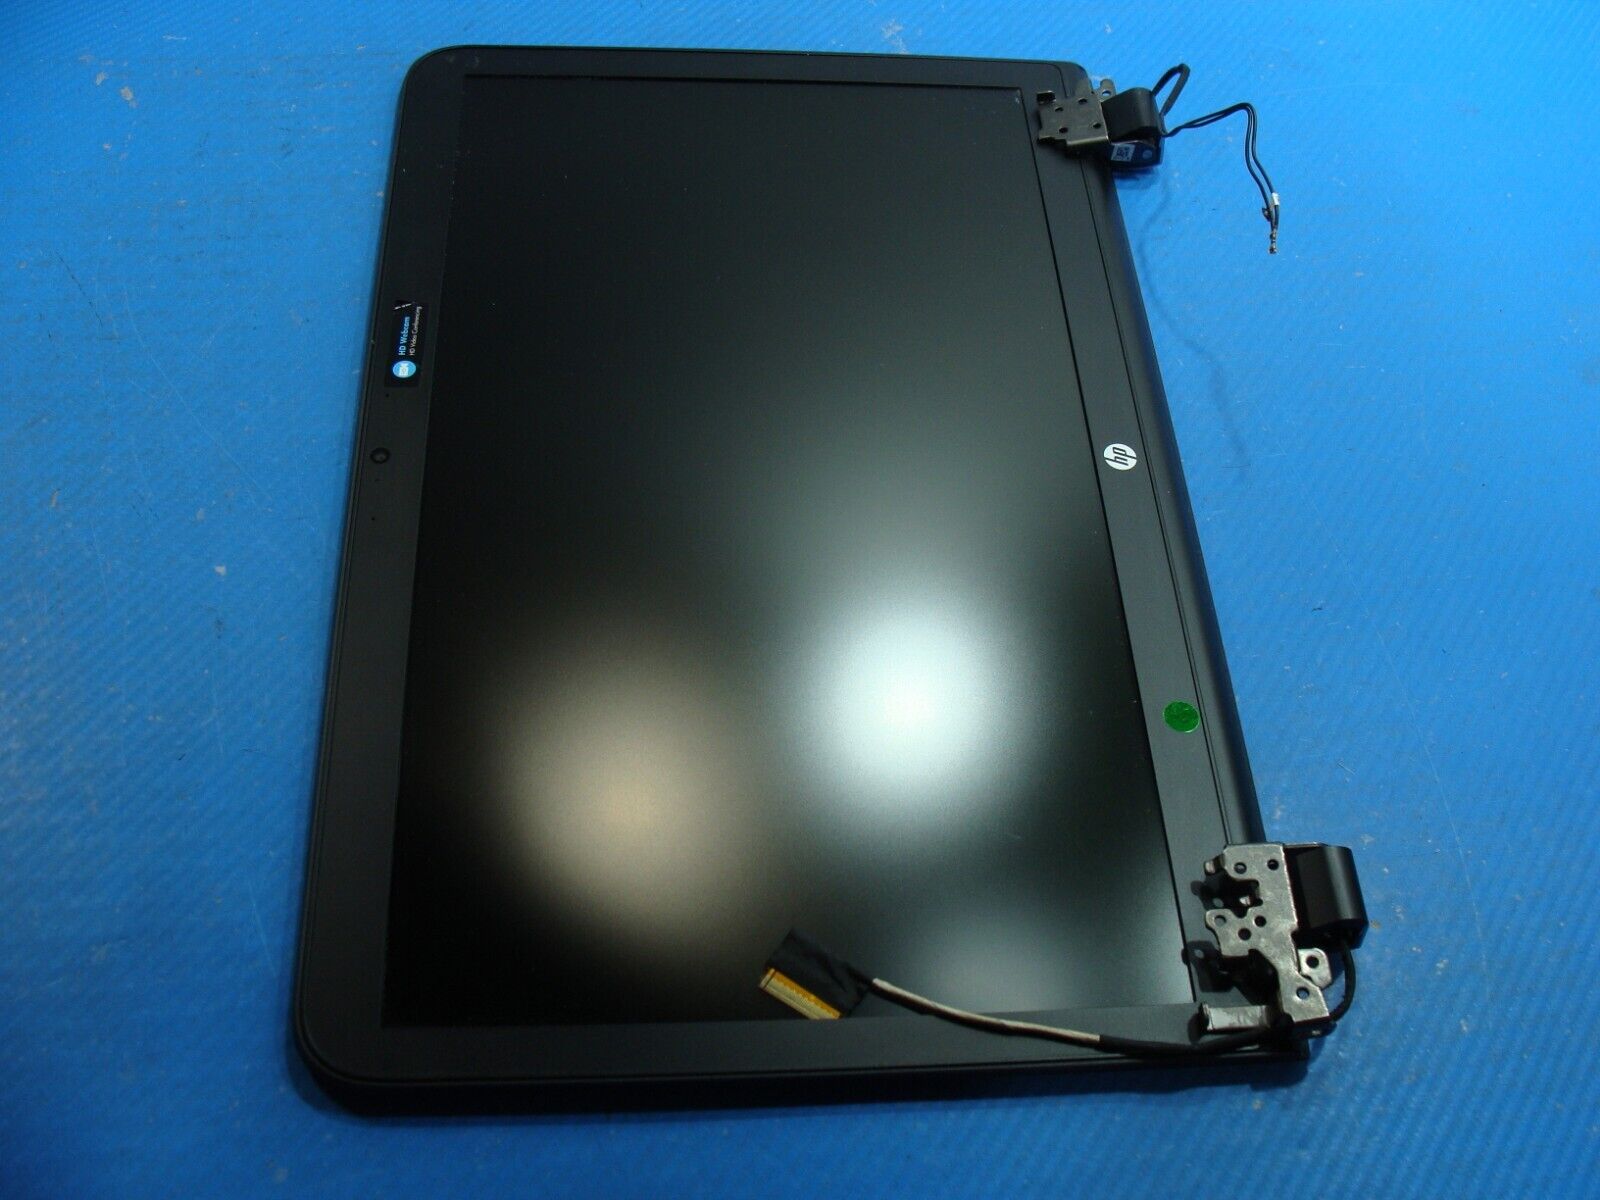 HP Probook 450 G3 15.6